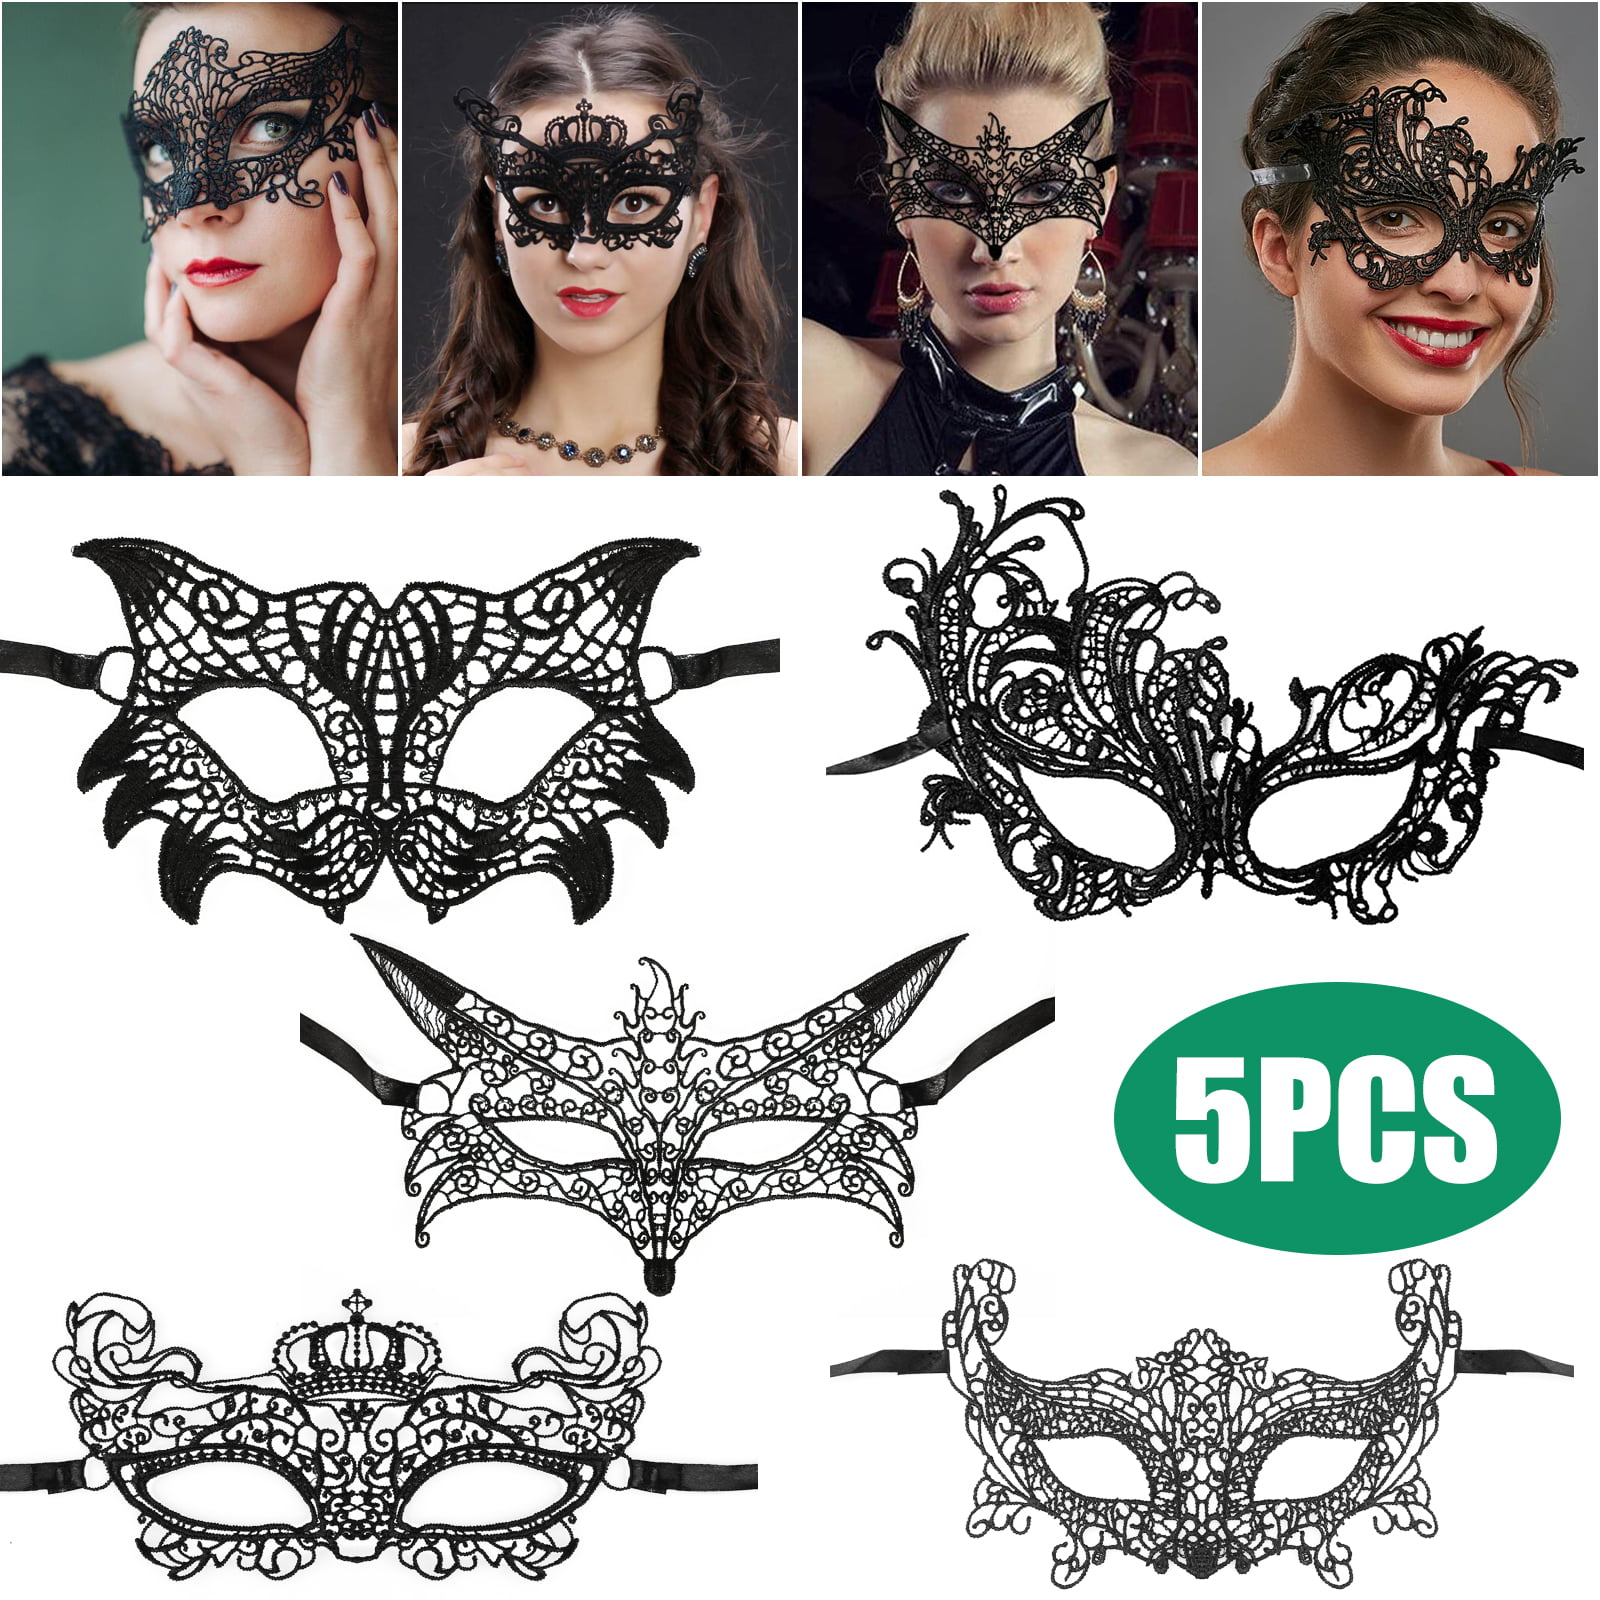 black lace masks